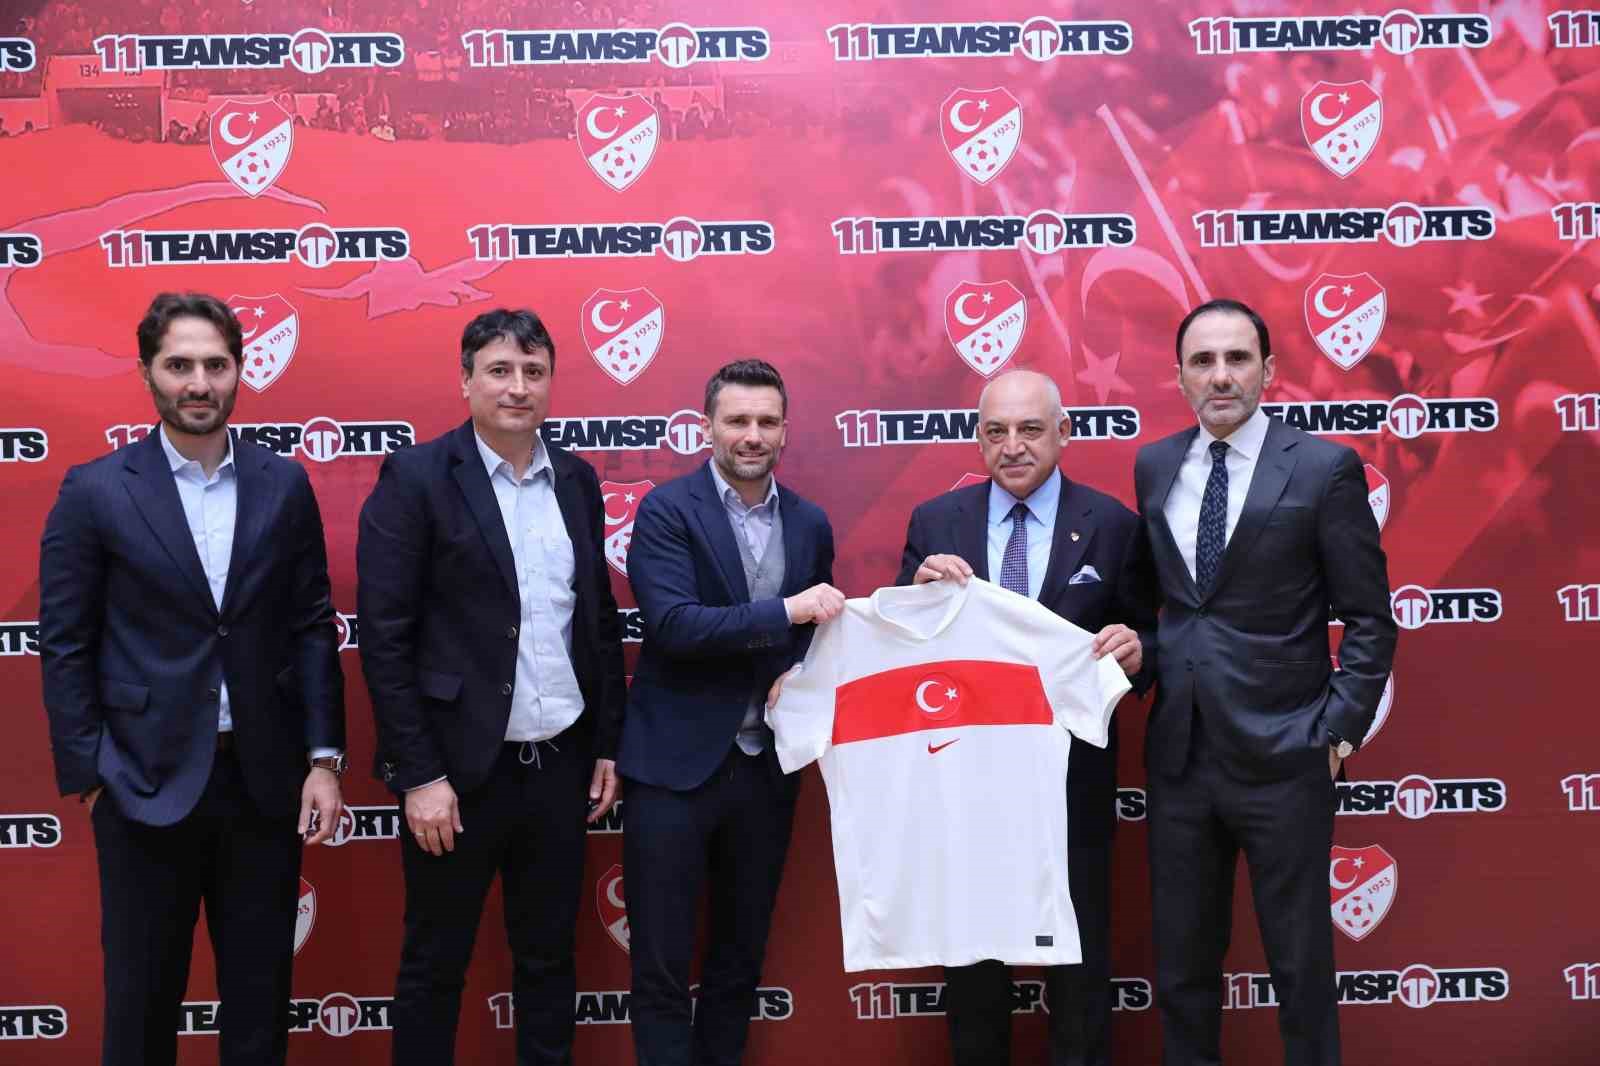 turkiye futbol federasyonunun magazacilik ortagi 11teamsports group oldu 0 TSNLXutl